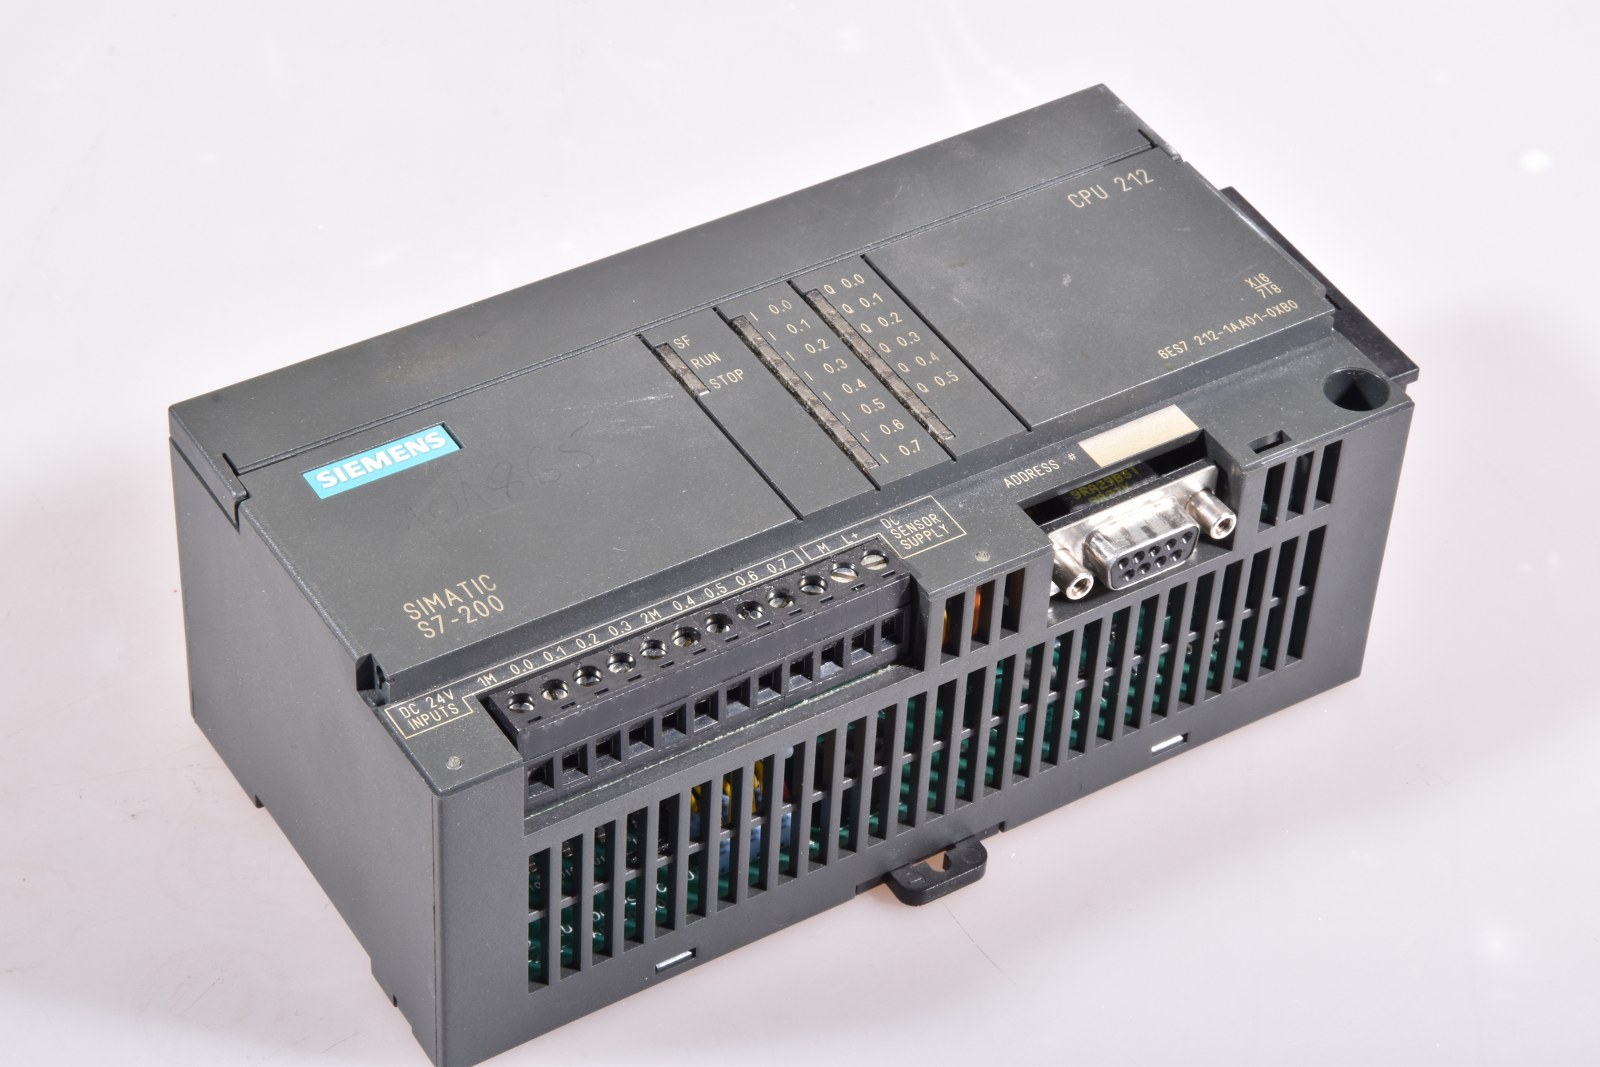 Siemens Simatic S7-200 CPU 212   6ES7212-1AA01-0XB0 geprüft ok 